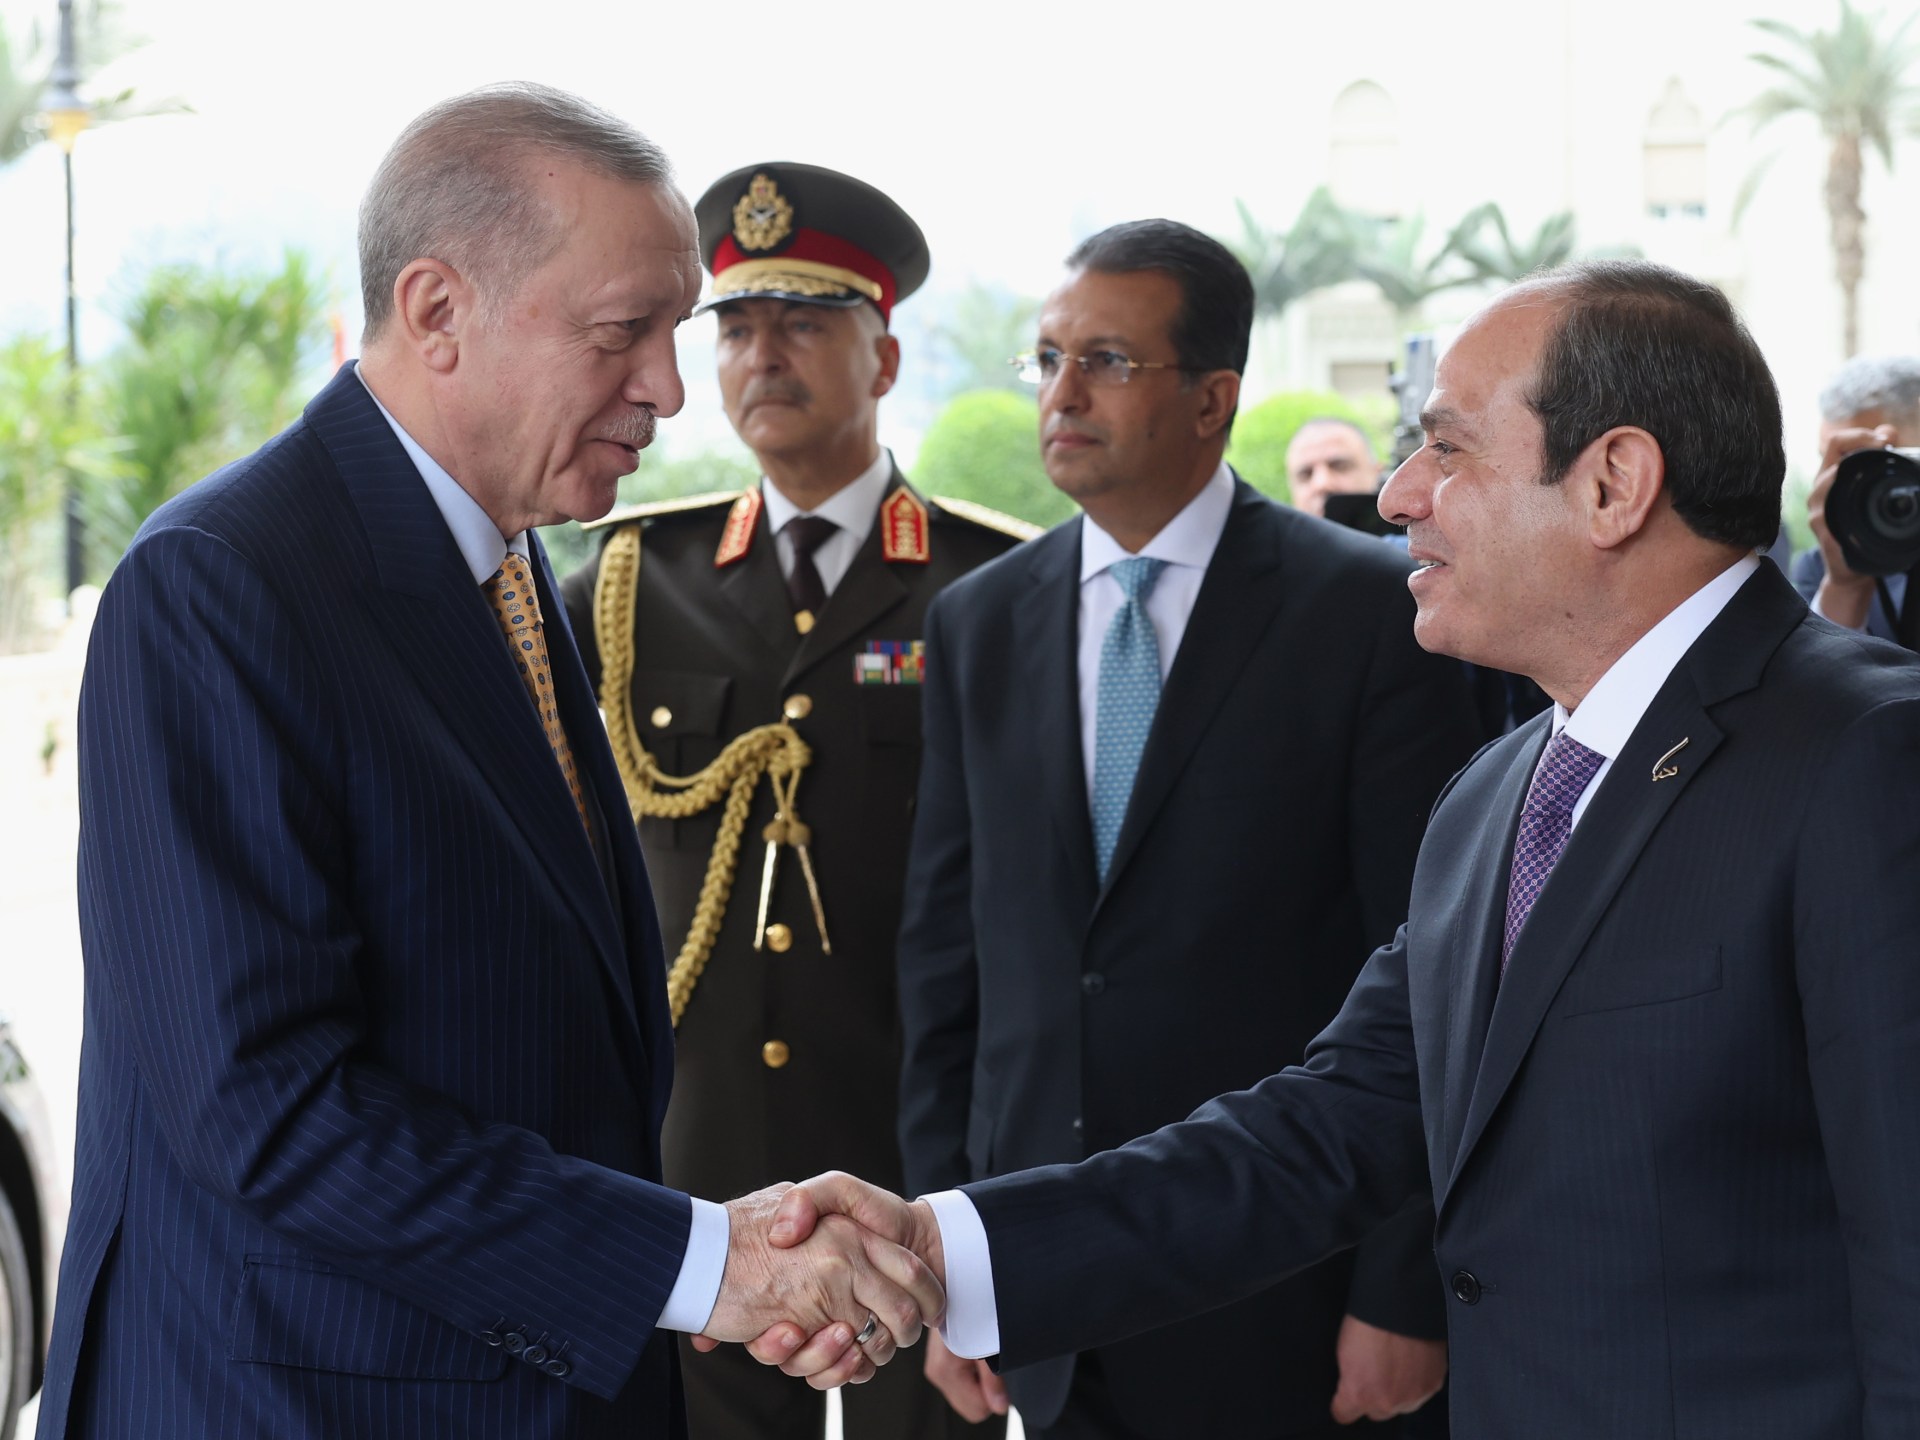 معالم الحقبة الجديدة في العلاقات التركية المصرية | آراء – البوكس نيوز